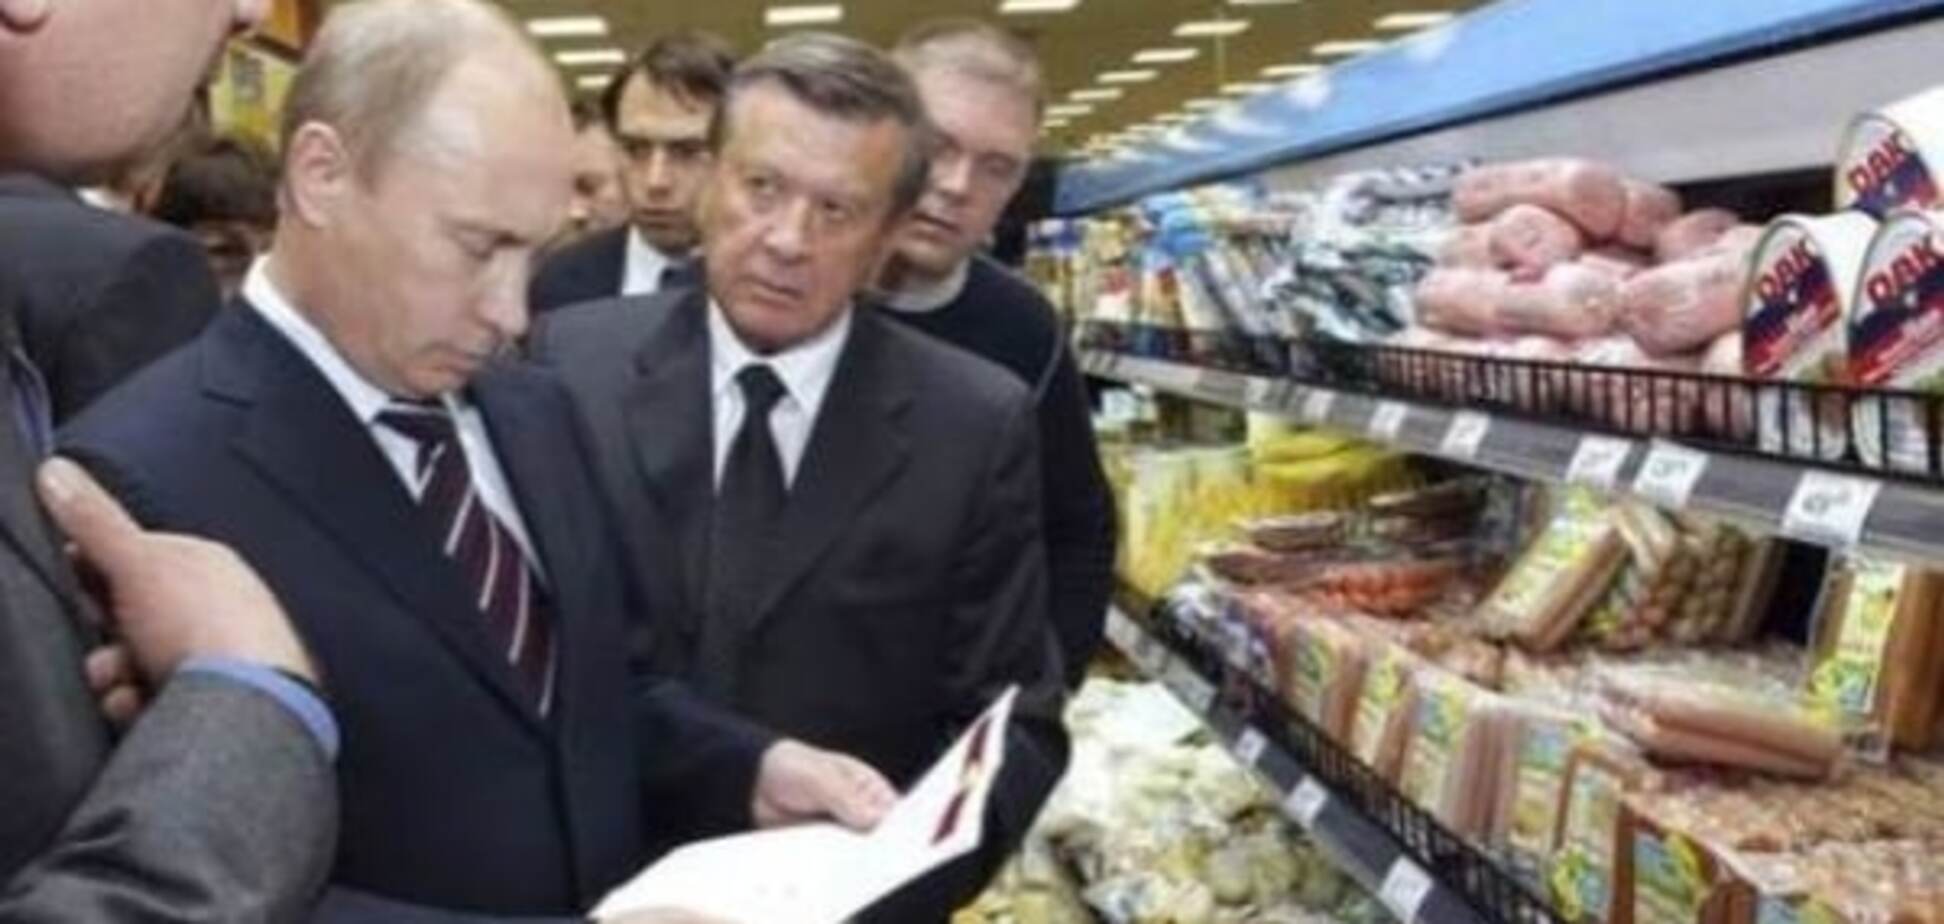 Сыр и 'молочка' г.., цены — ужас: россияне пожаловались на кризисное импортозамещение